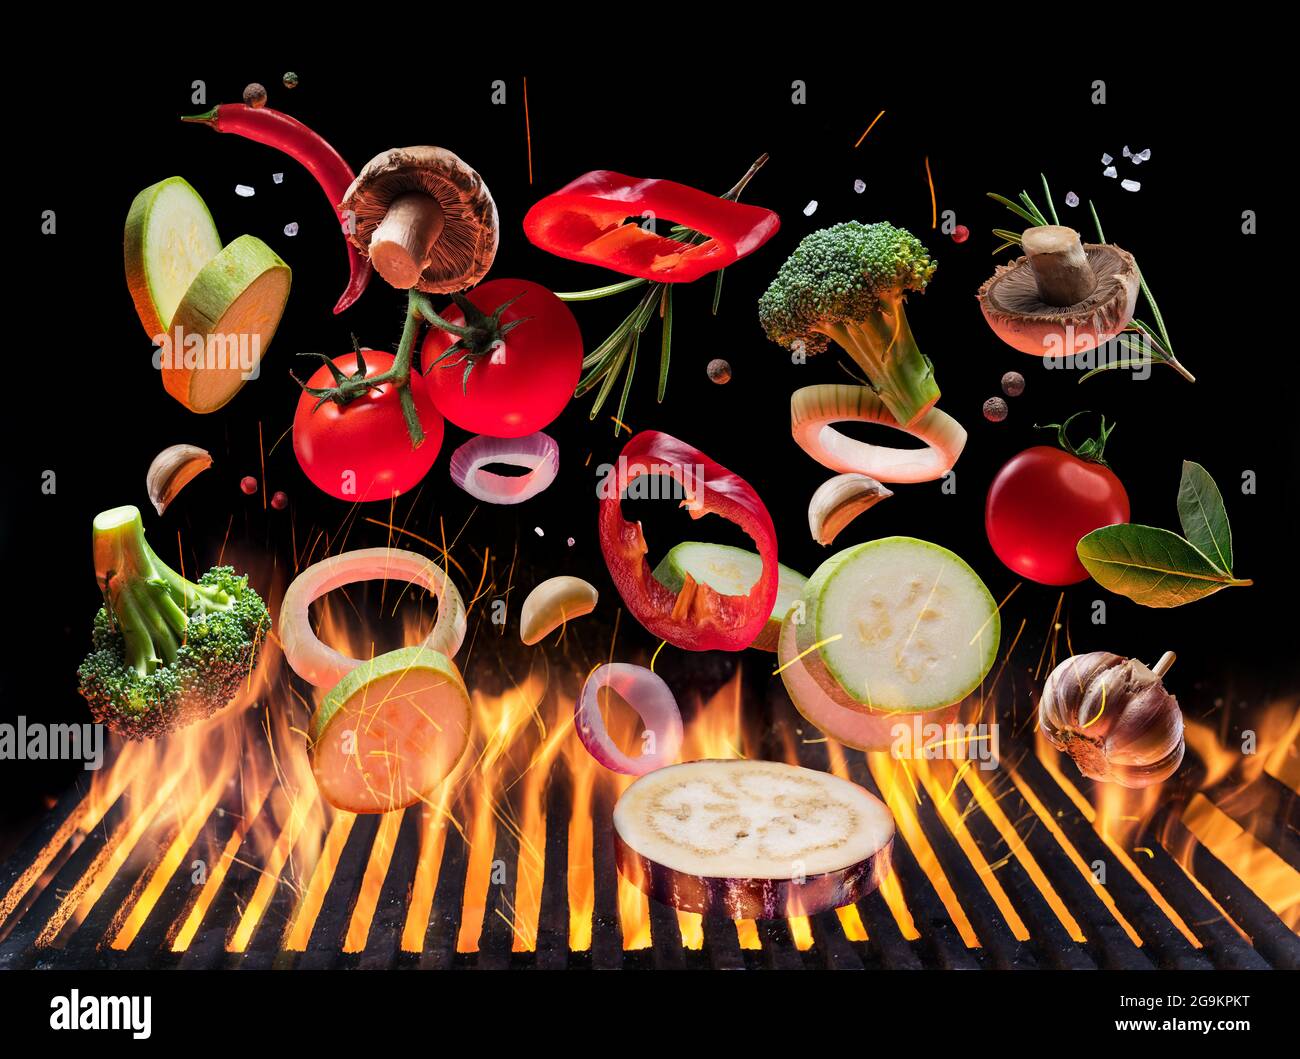 Gegrilltes Gemüse und Pilze in Bewegung fallen auf offenen Grill. Konzeptionelles Foto des Grillkochvorgangs. Stockfoto